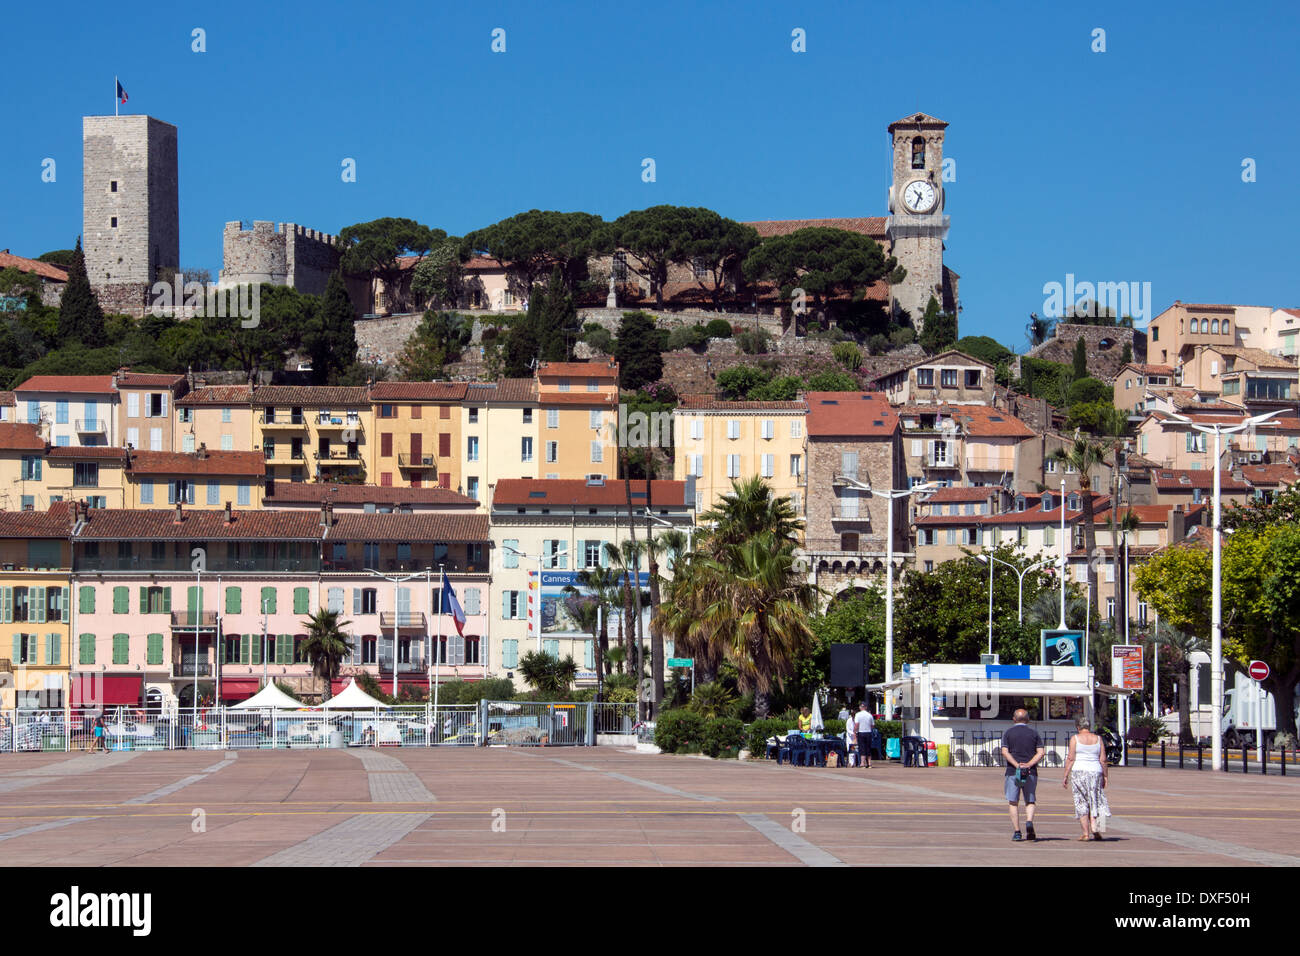 Altstadt Cannes an der französischen Riviera in der Region Côte d ' Azur im Süden Frankreichs. Stockfoto